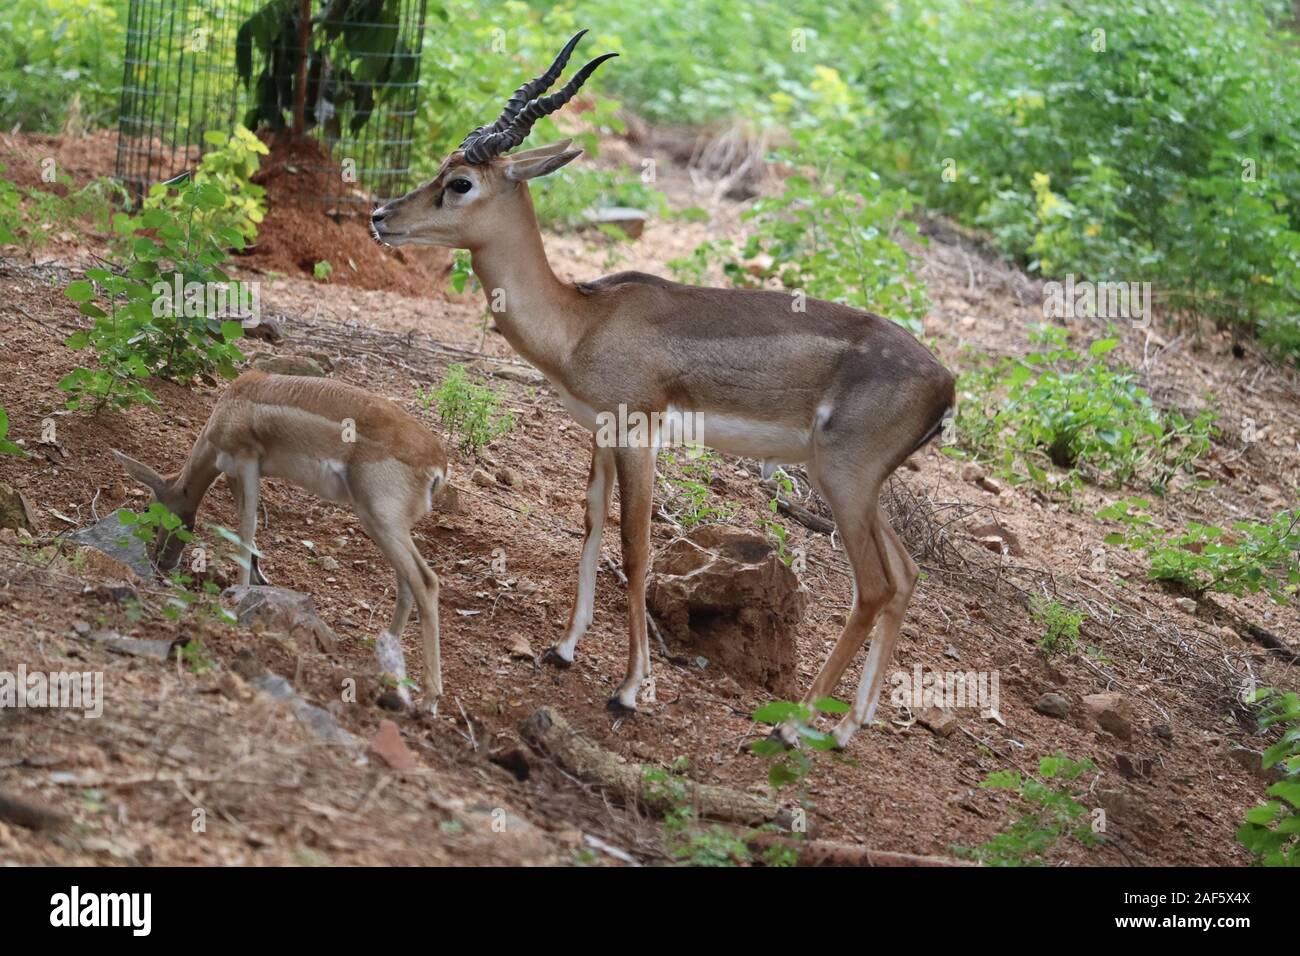 Herde von Impala Antilope im natürlichen Lebensraum. Eine männliche Impala steuert seinen Harem von Frauen Stockfoto